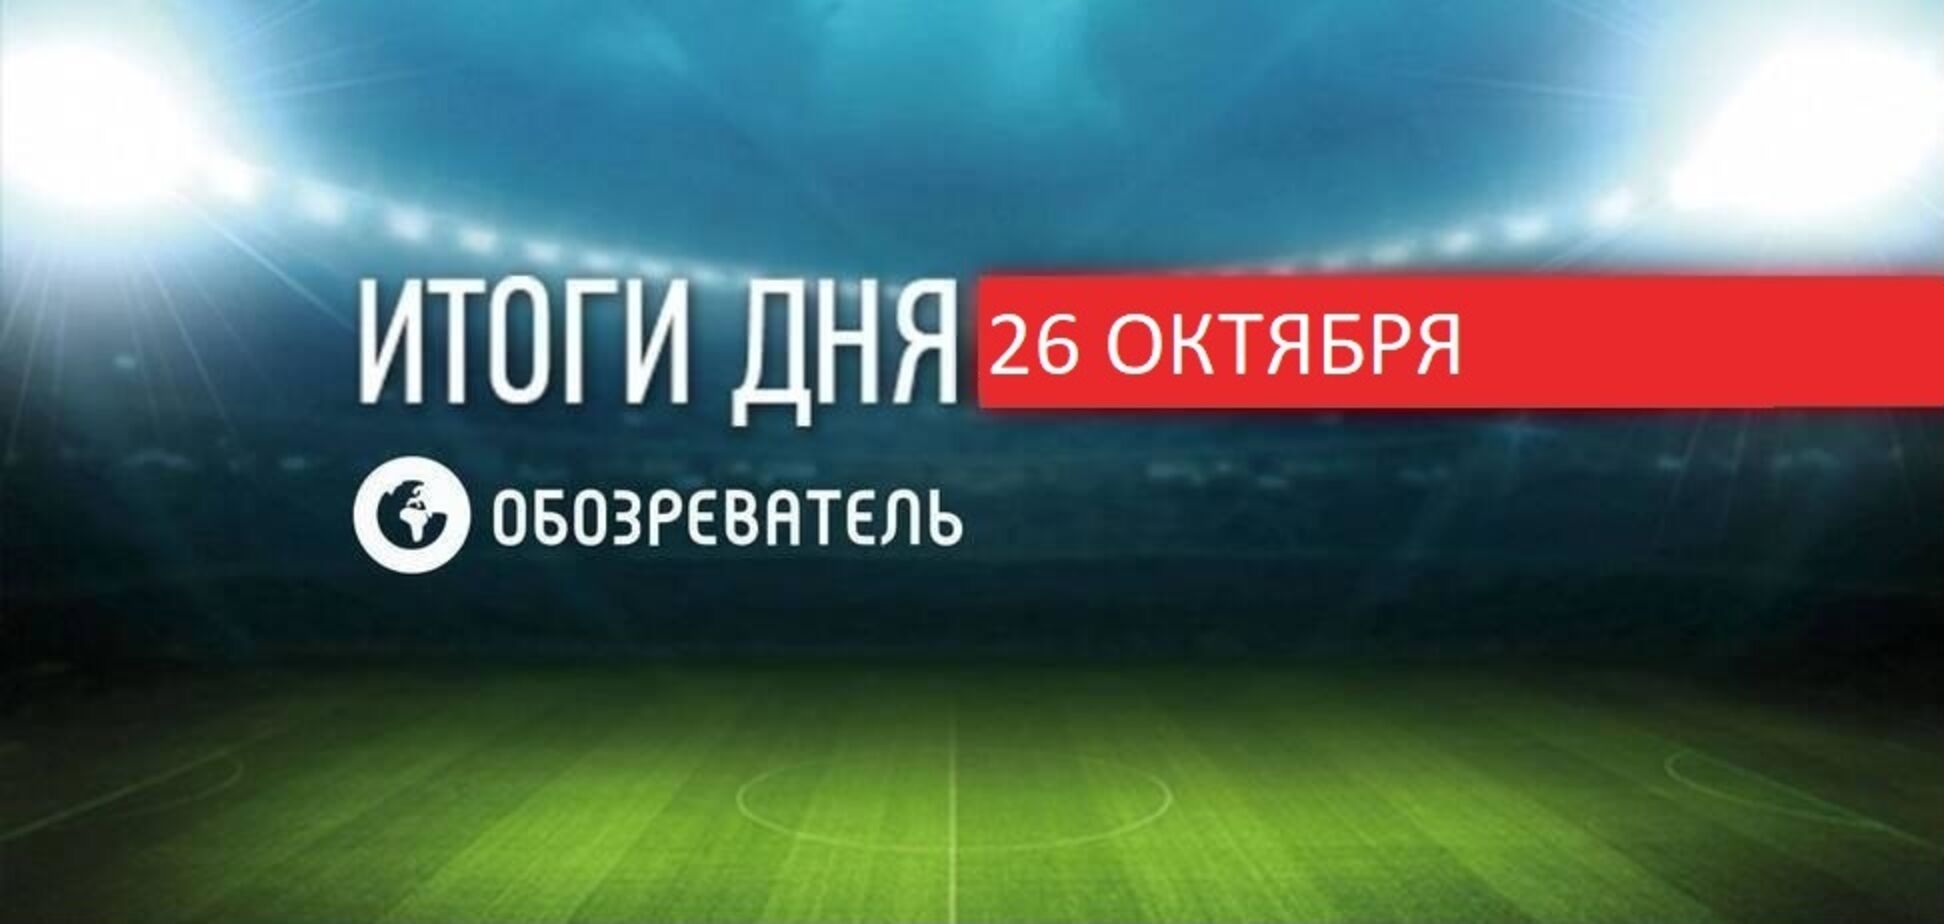 Украинский футболист забил три гола за 10 минут: спортивные итоги 26 октября